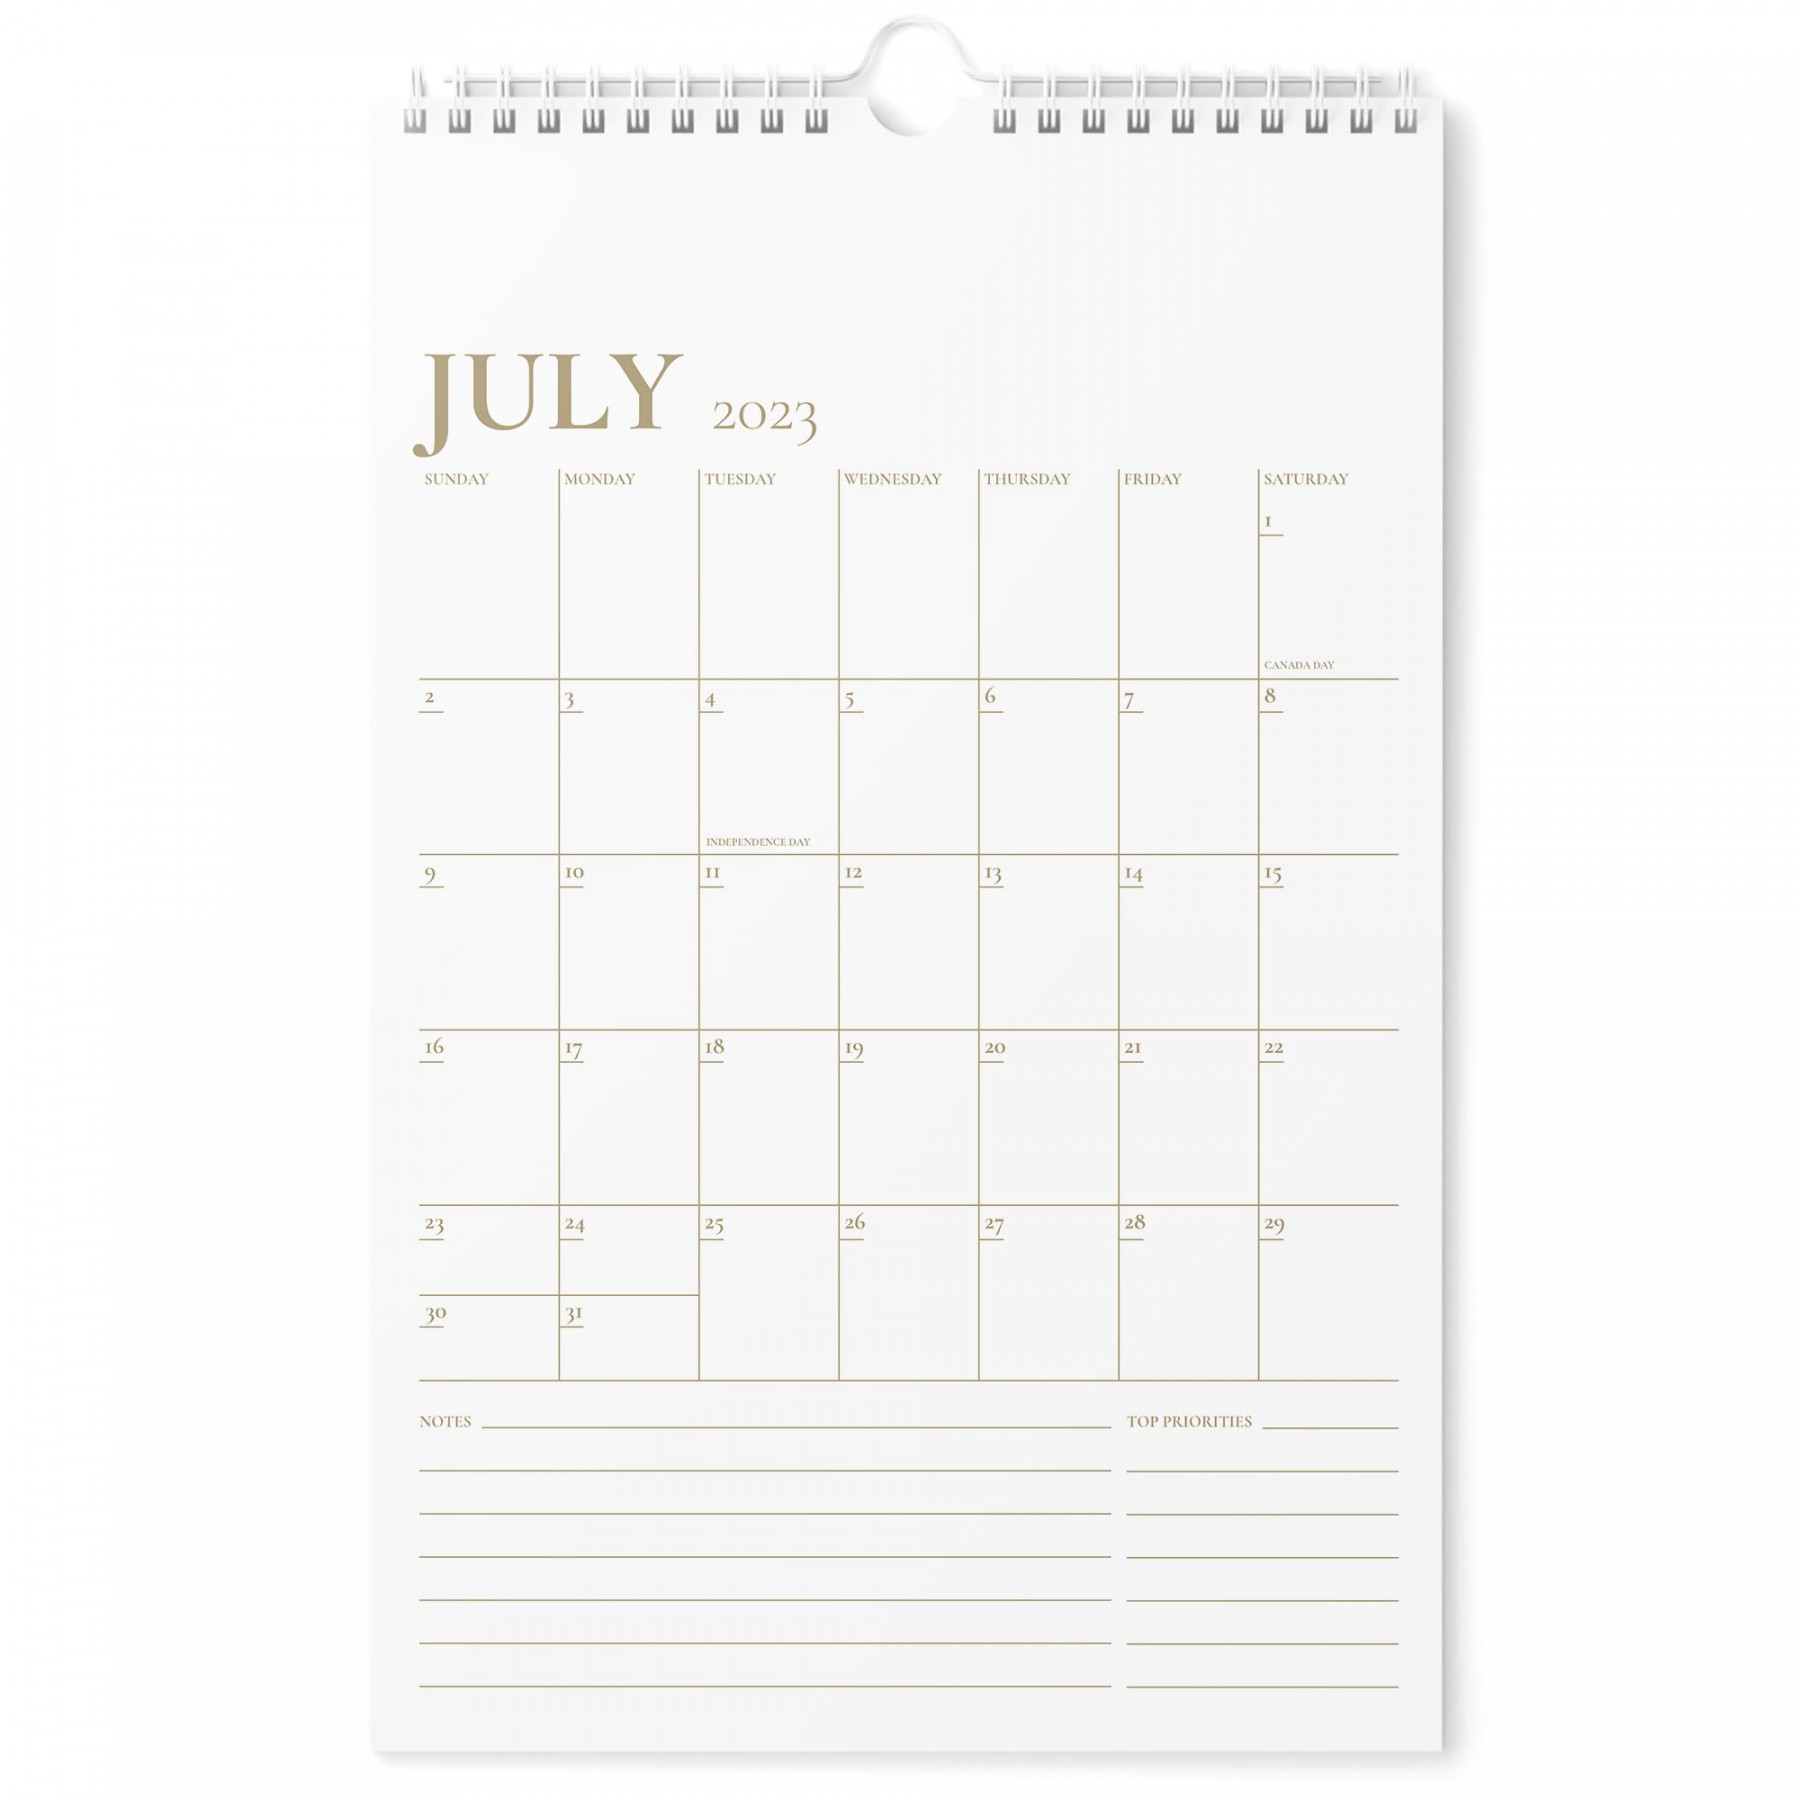 Calendar - - Vertical x  Wall Calendar Runs Until December  20 - Easy Planning with tSee more Calendar - - Vertical x